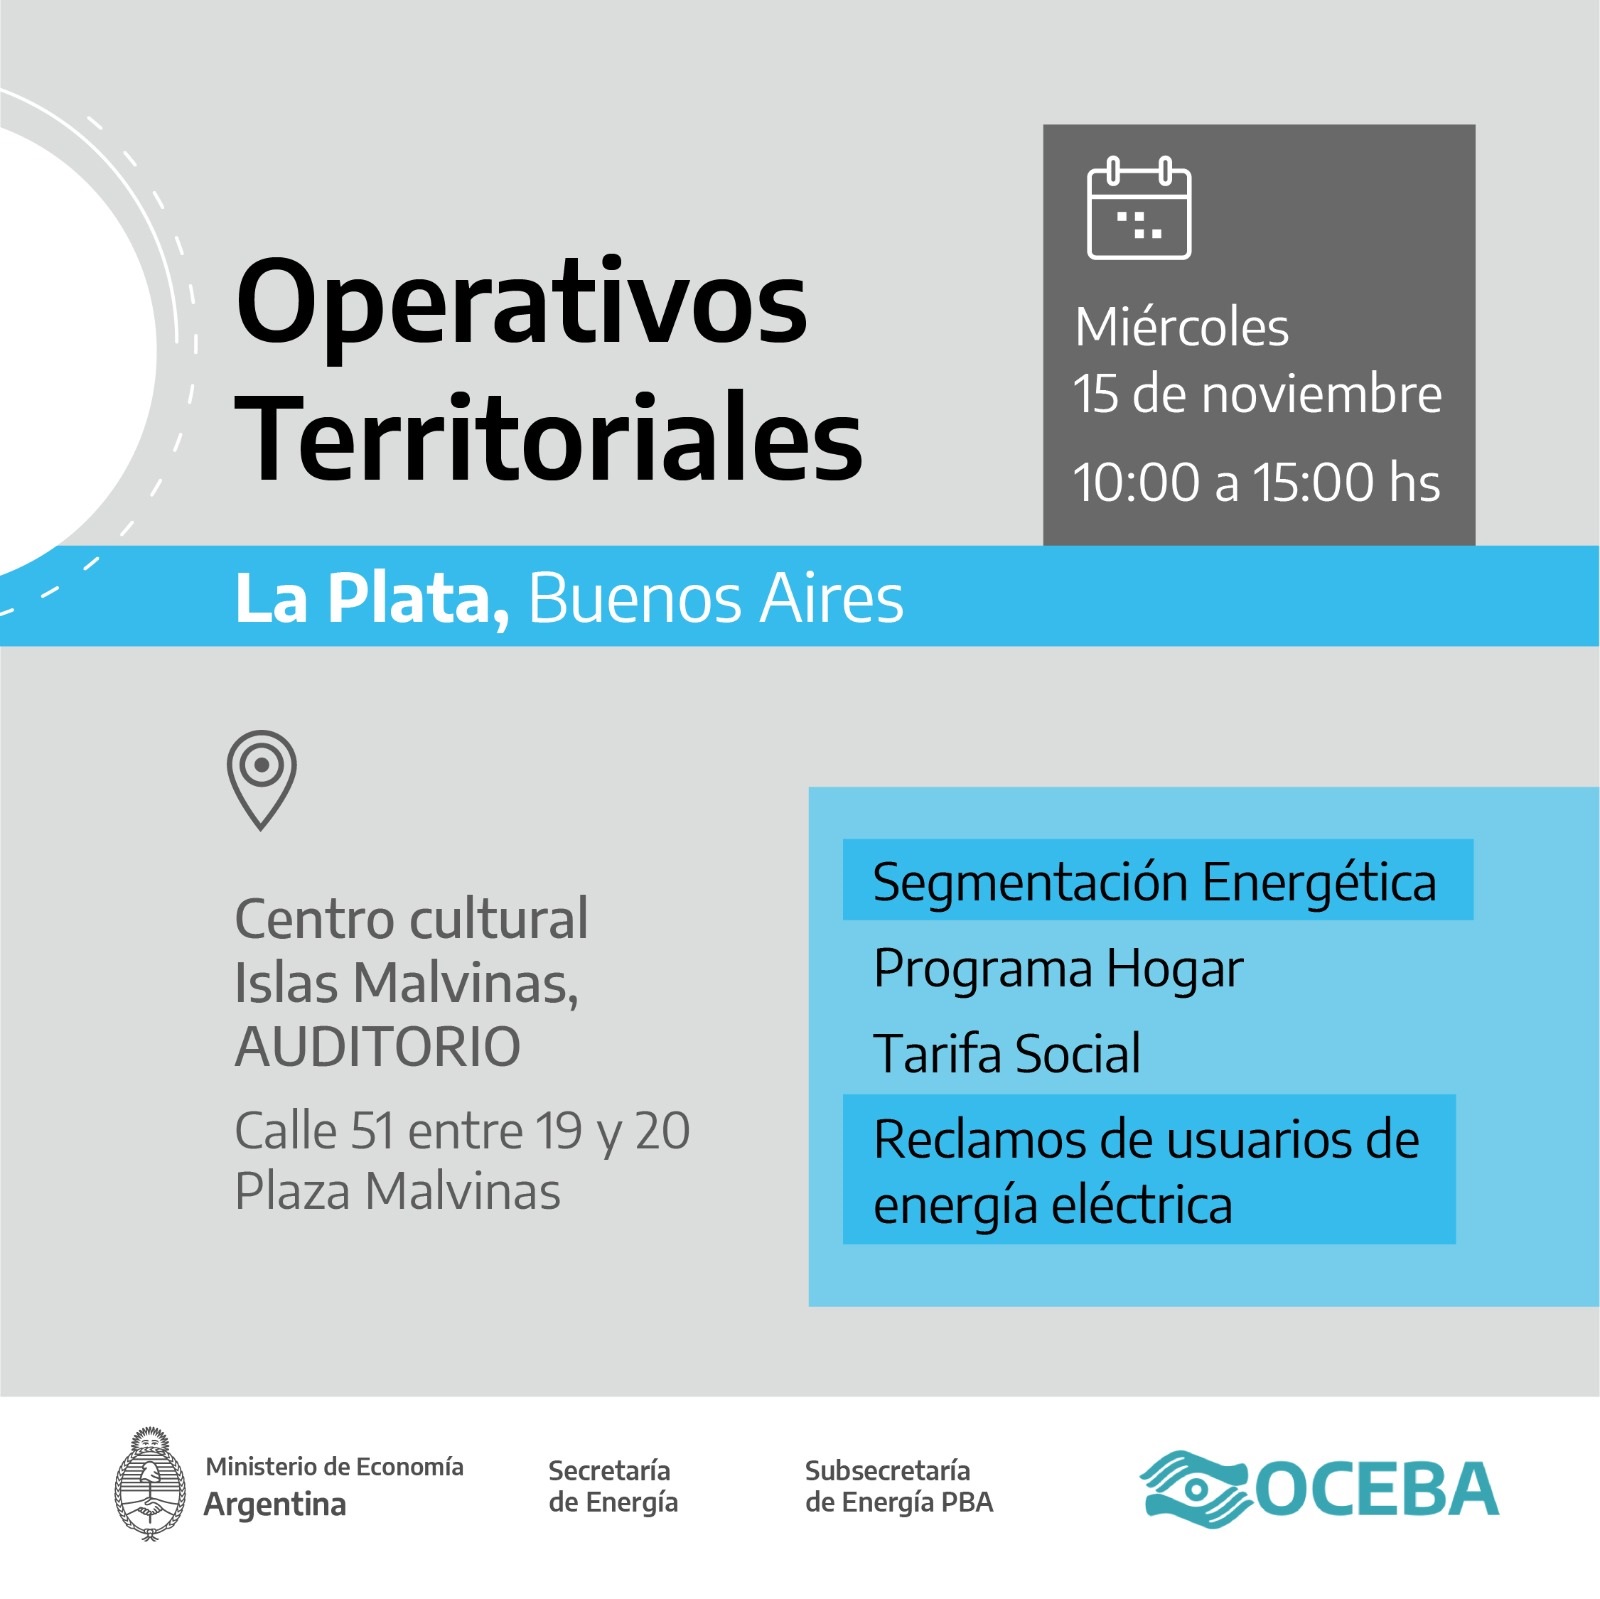 OCEBA organiza un nuevo operativo territorial en La Plata